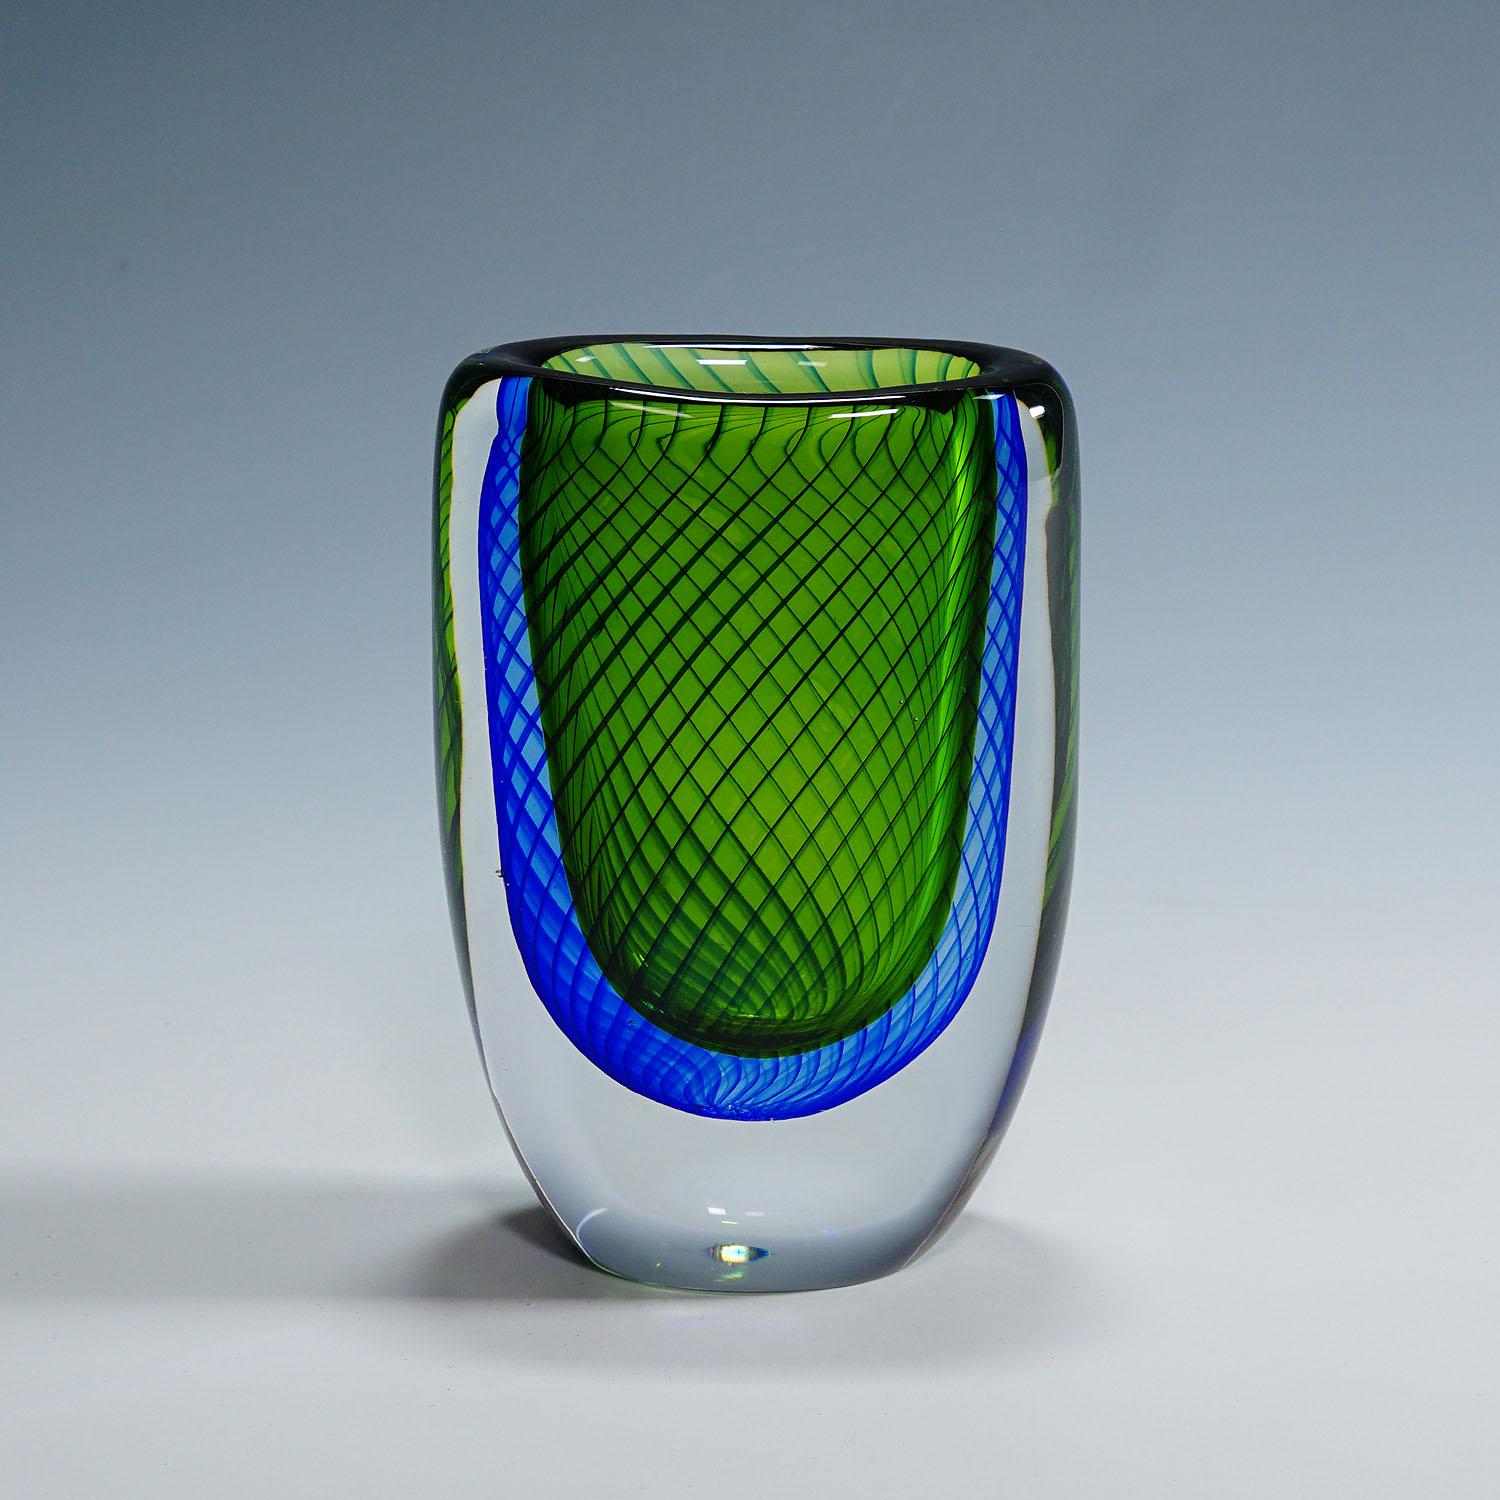 Vase à couches bleues et vertes, Vicke Lindstrand pour Kosta, années 1950

Un vase vintage en verre d'art conçu par Vicke Lindstrand et fabriqué par Kosta Glasbruk vers les années 1950. Le vase est composé de couches de verre bleu et vert,